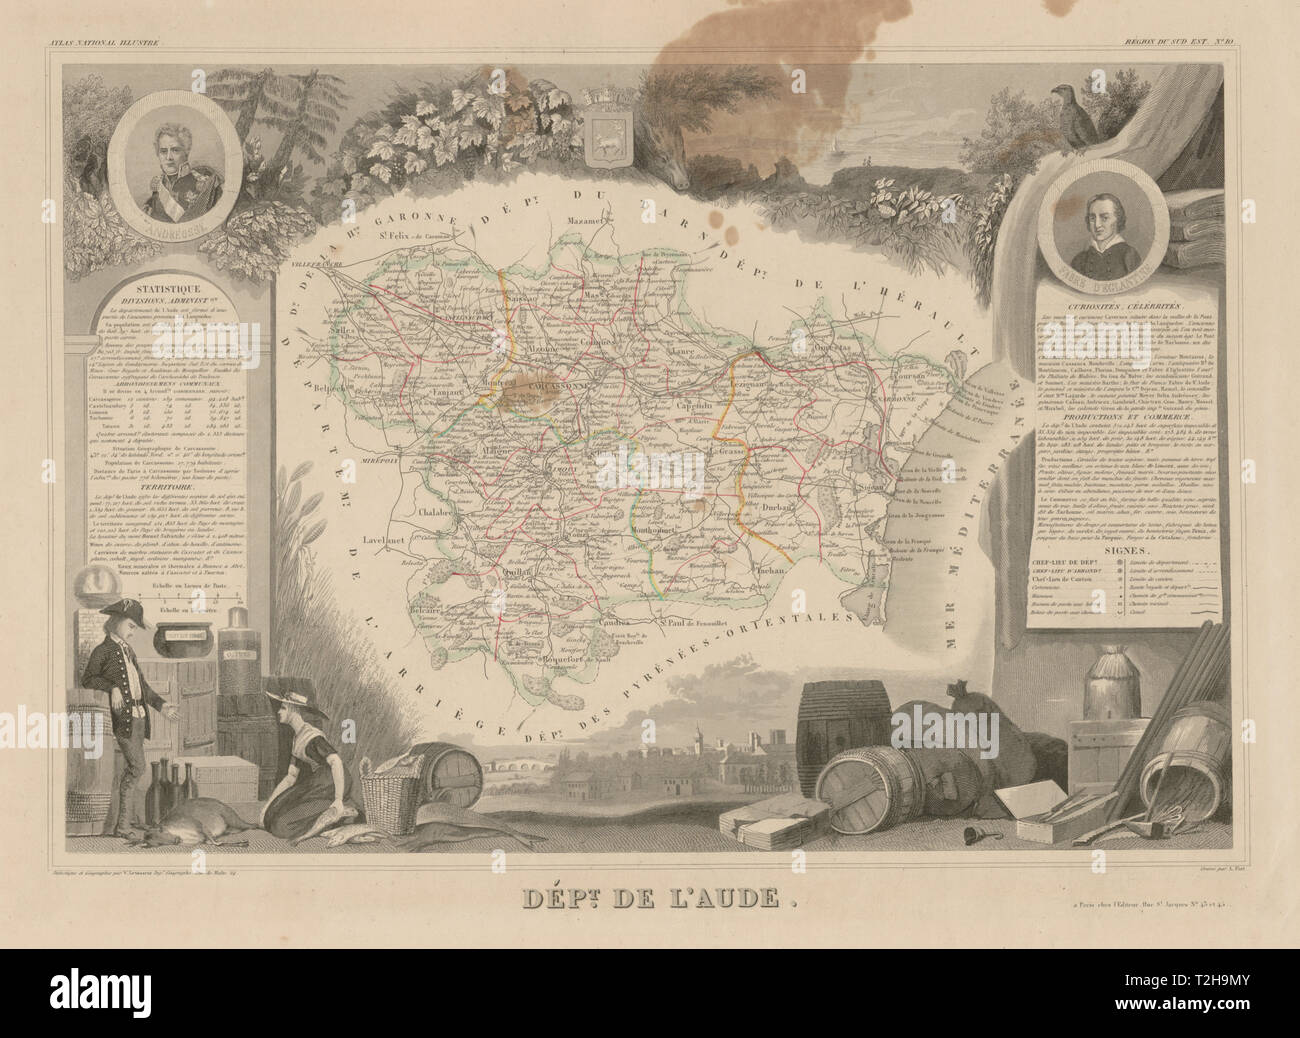 Departement De L Aude Decorative Antique Map Carte By Victor Levasseur C1854 Stock Photo Alamy